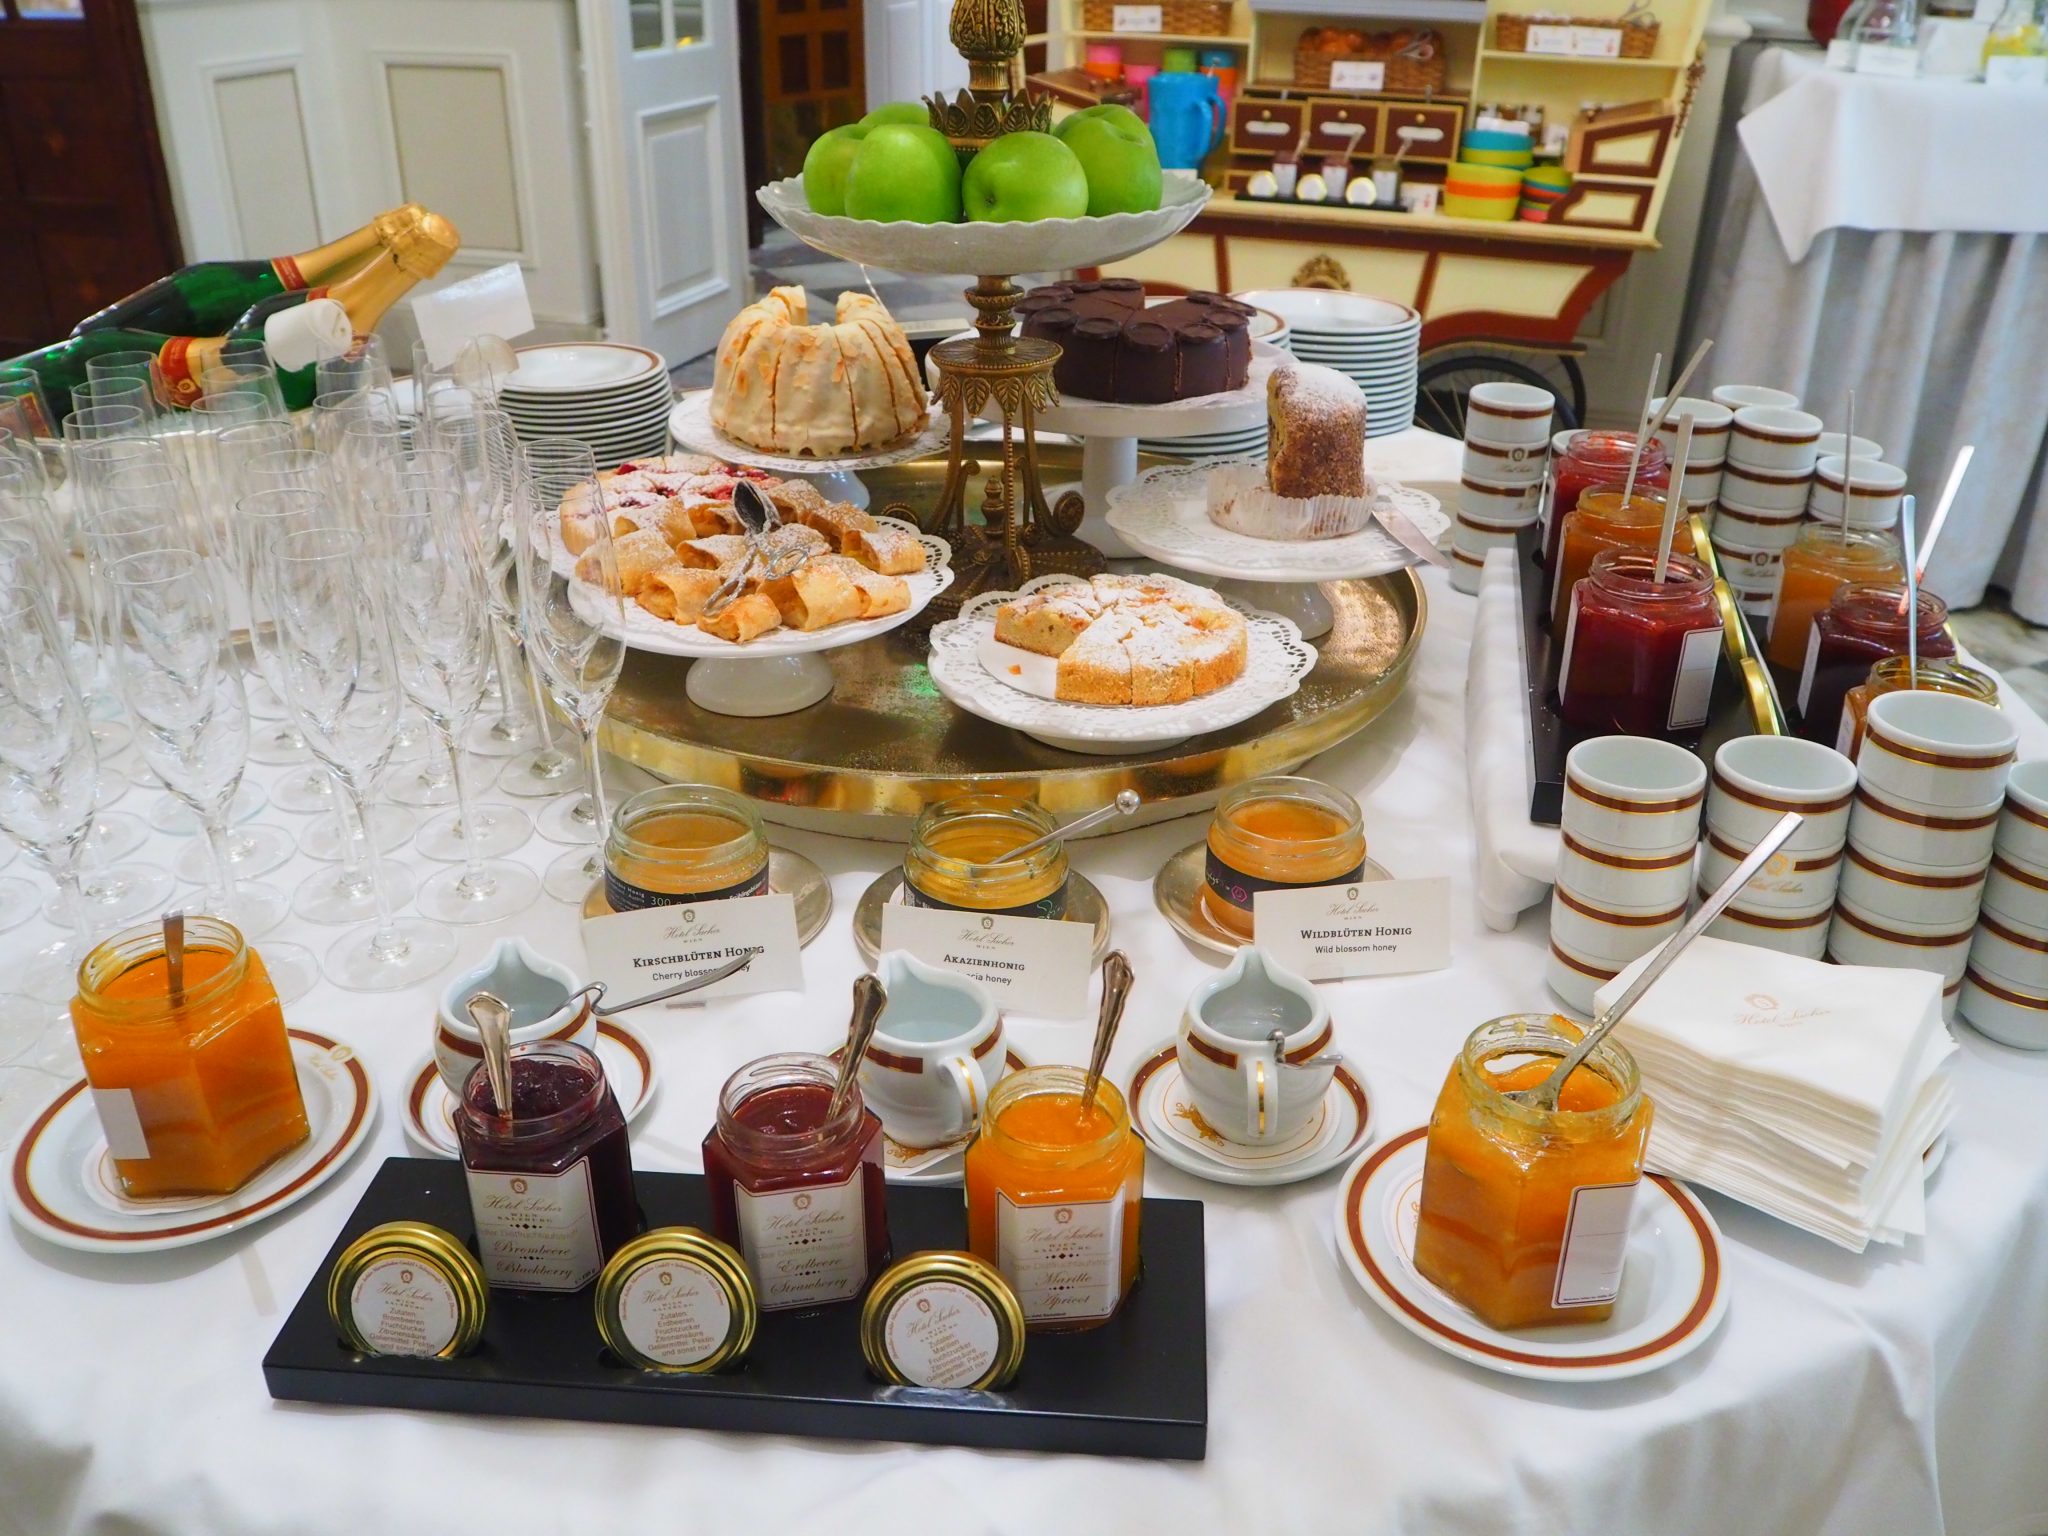 Breakfast Buffet at Hotel Sacher Vienna - Review 2022